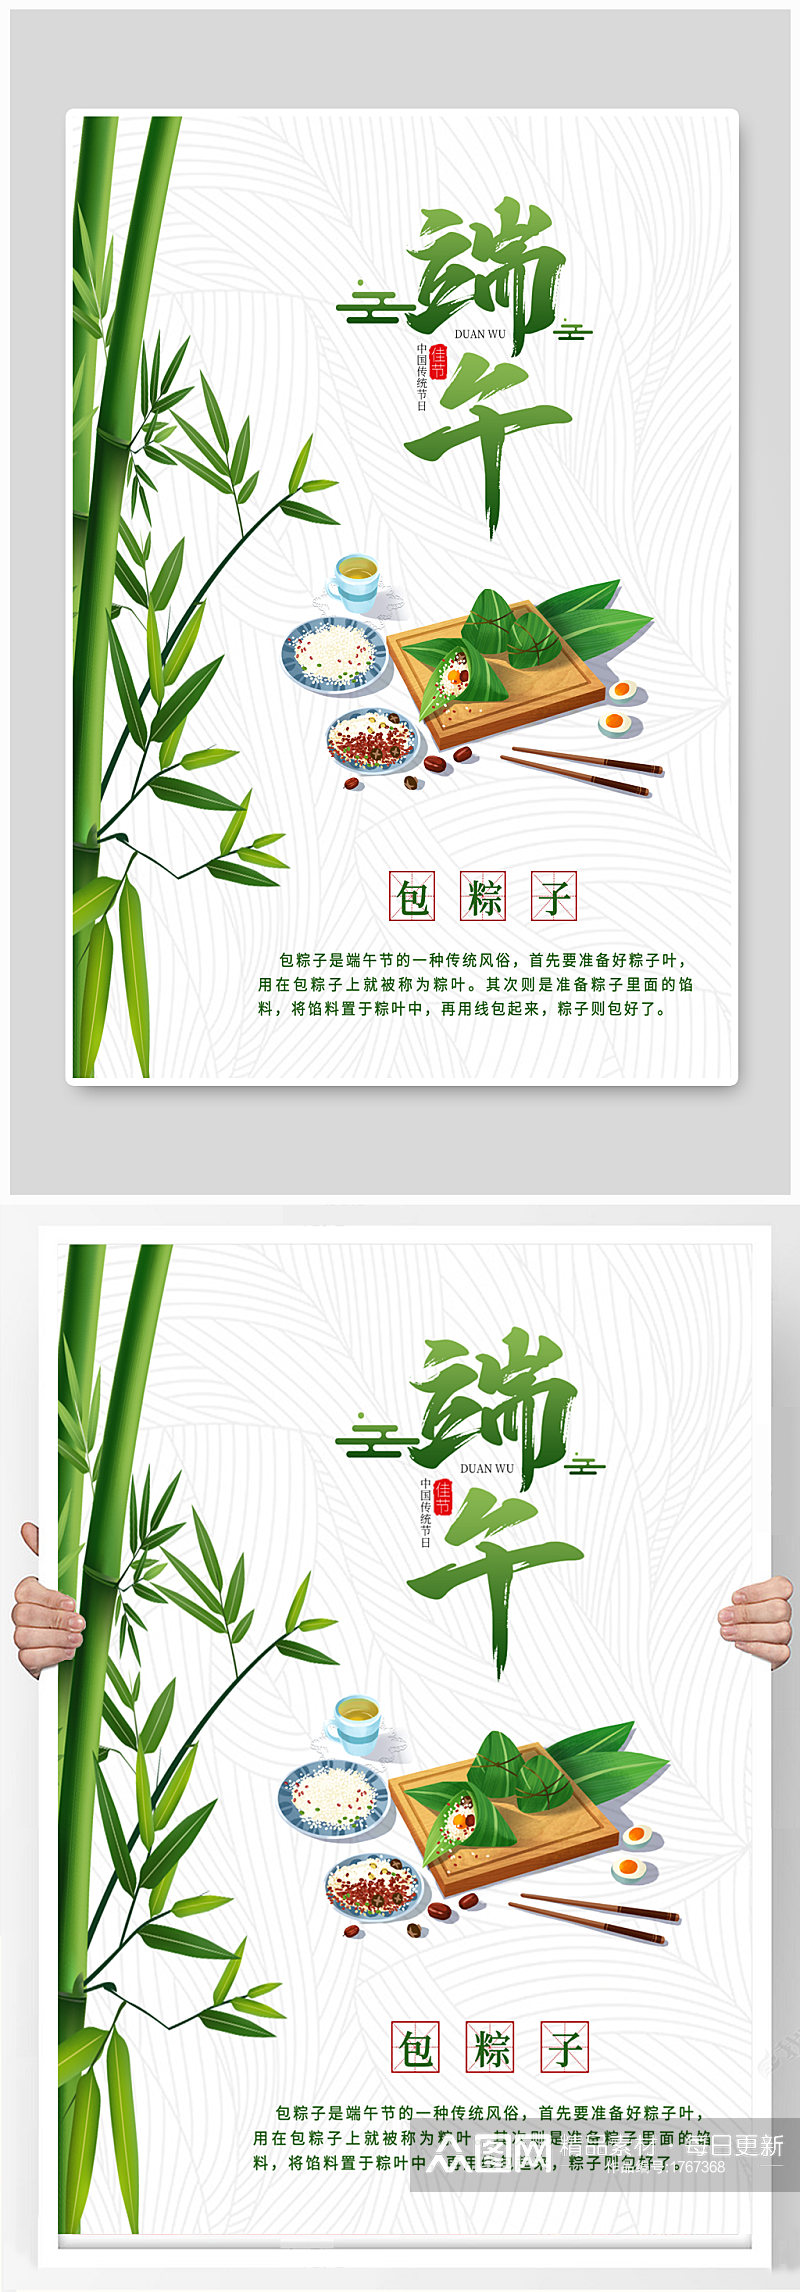 端午习俗风俗包粽子系列海报素材